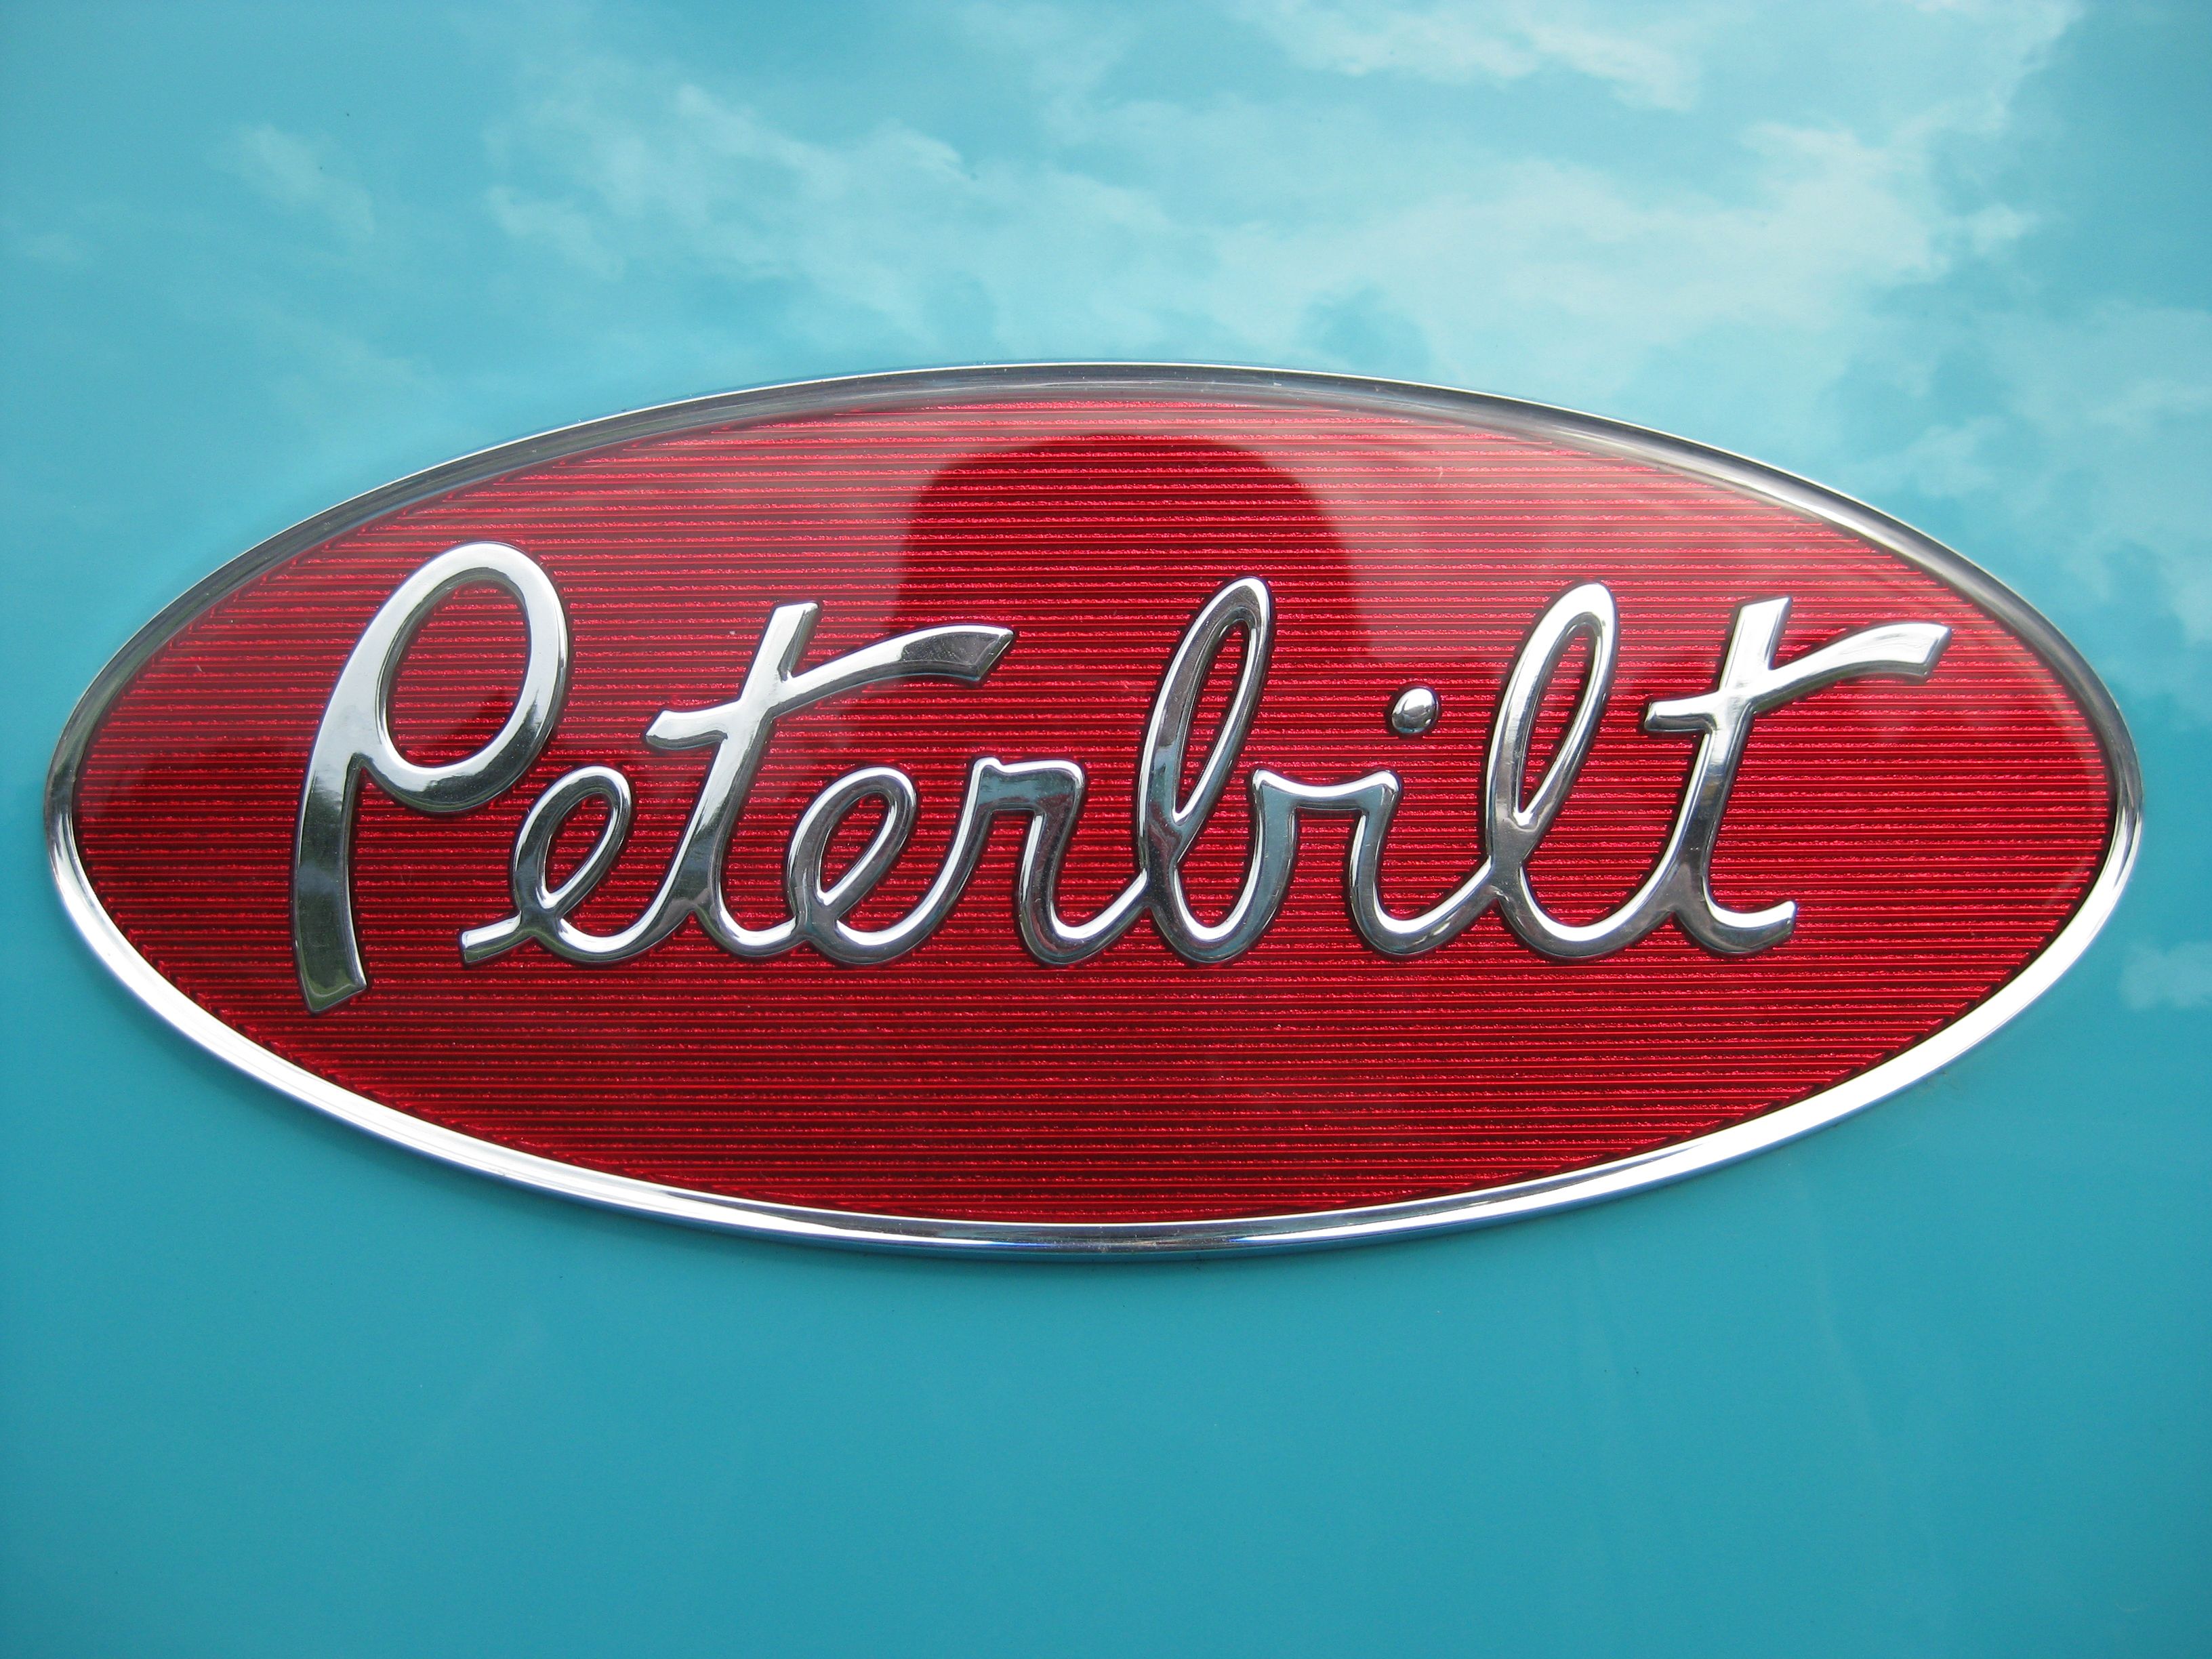 Peterbilt Logo Wallpaper